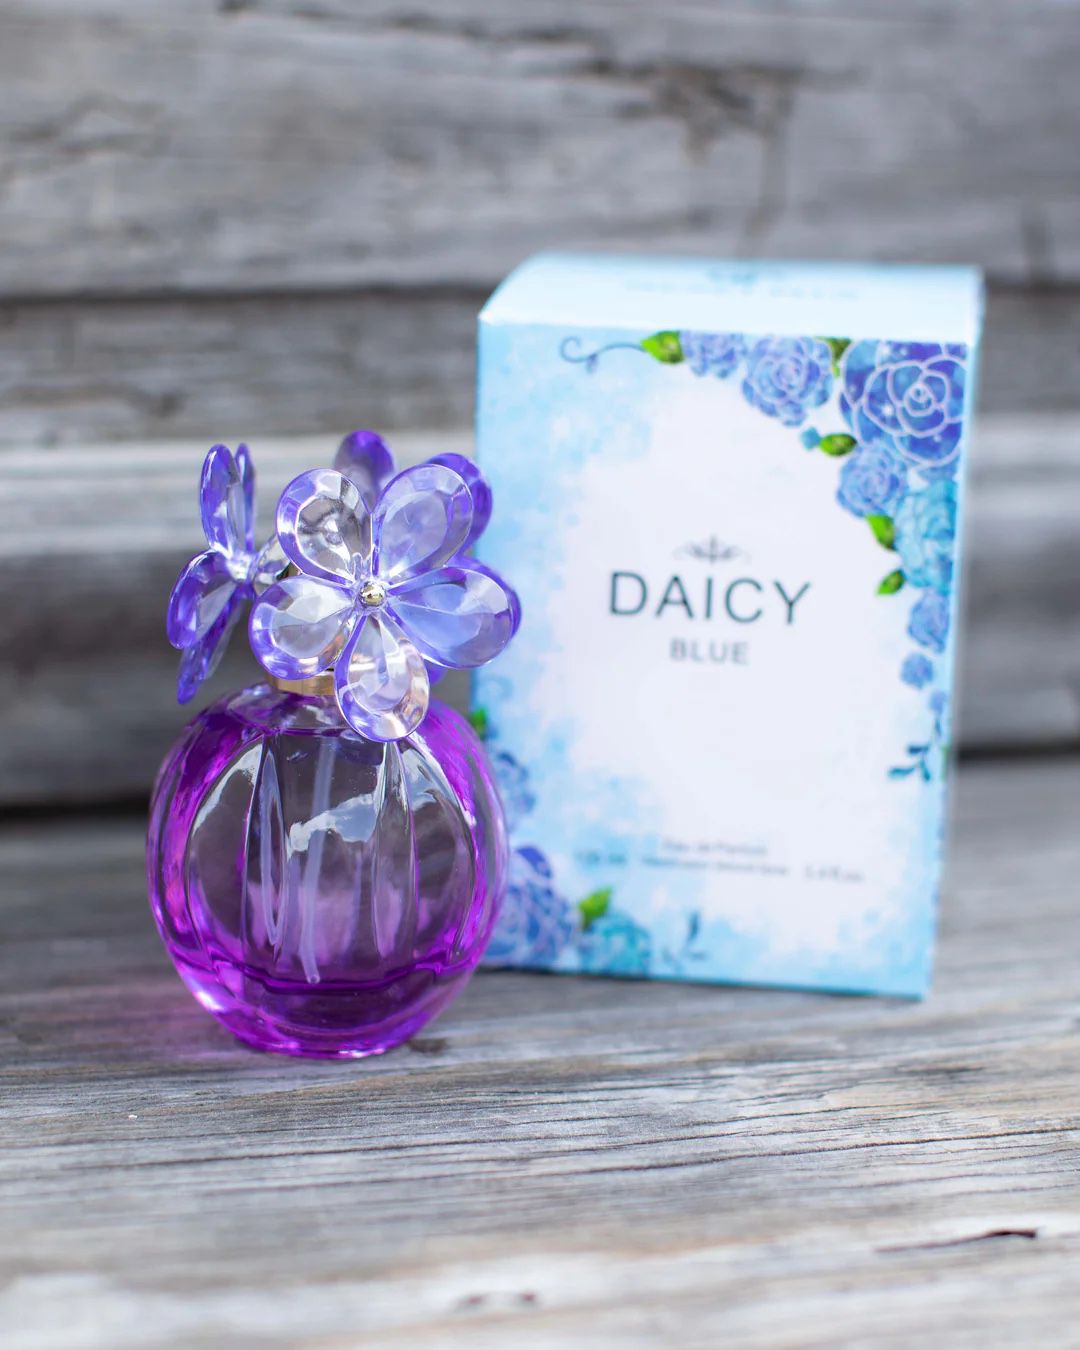 Daicy Perfume 